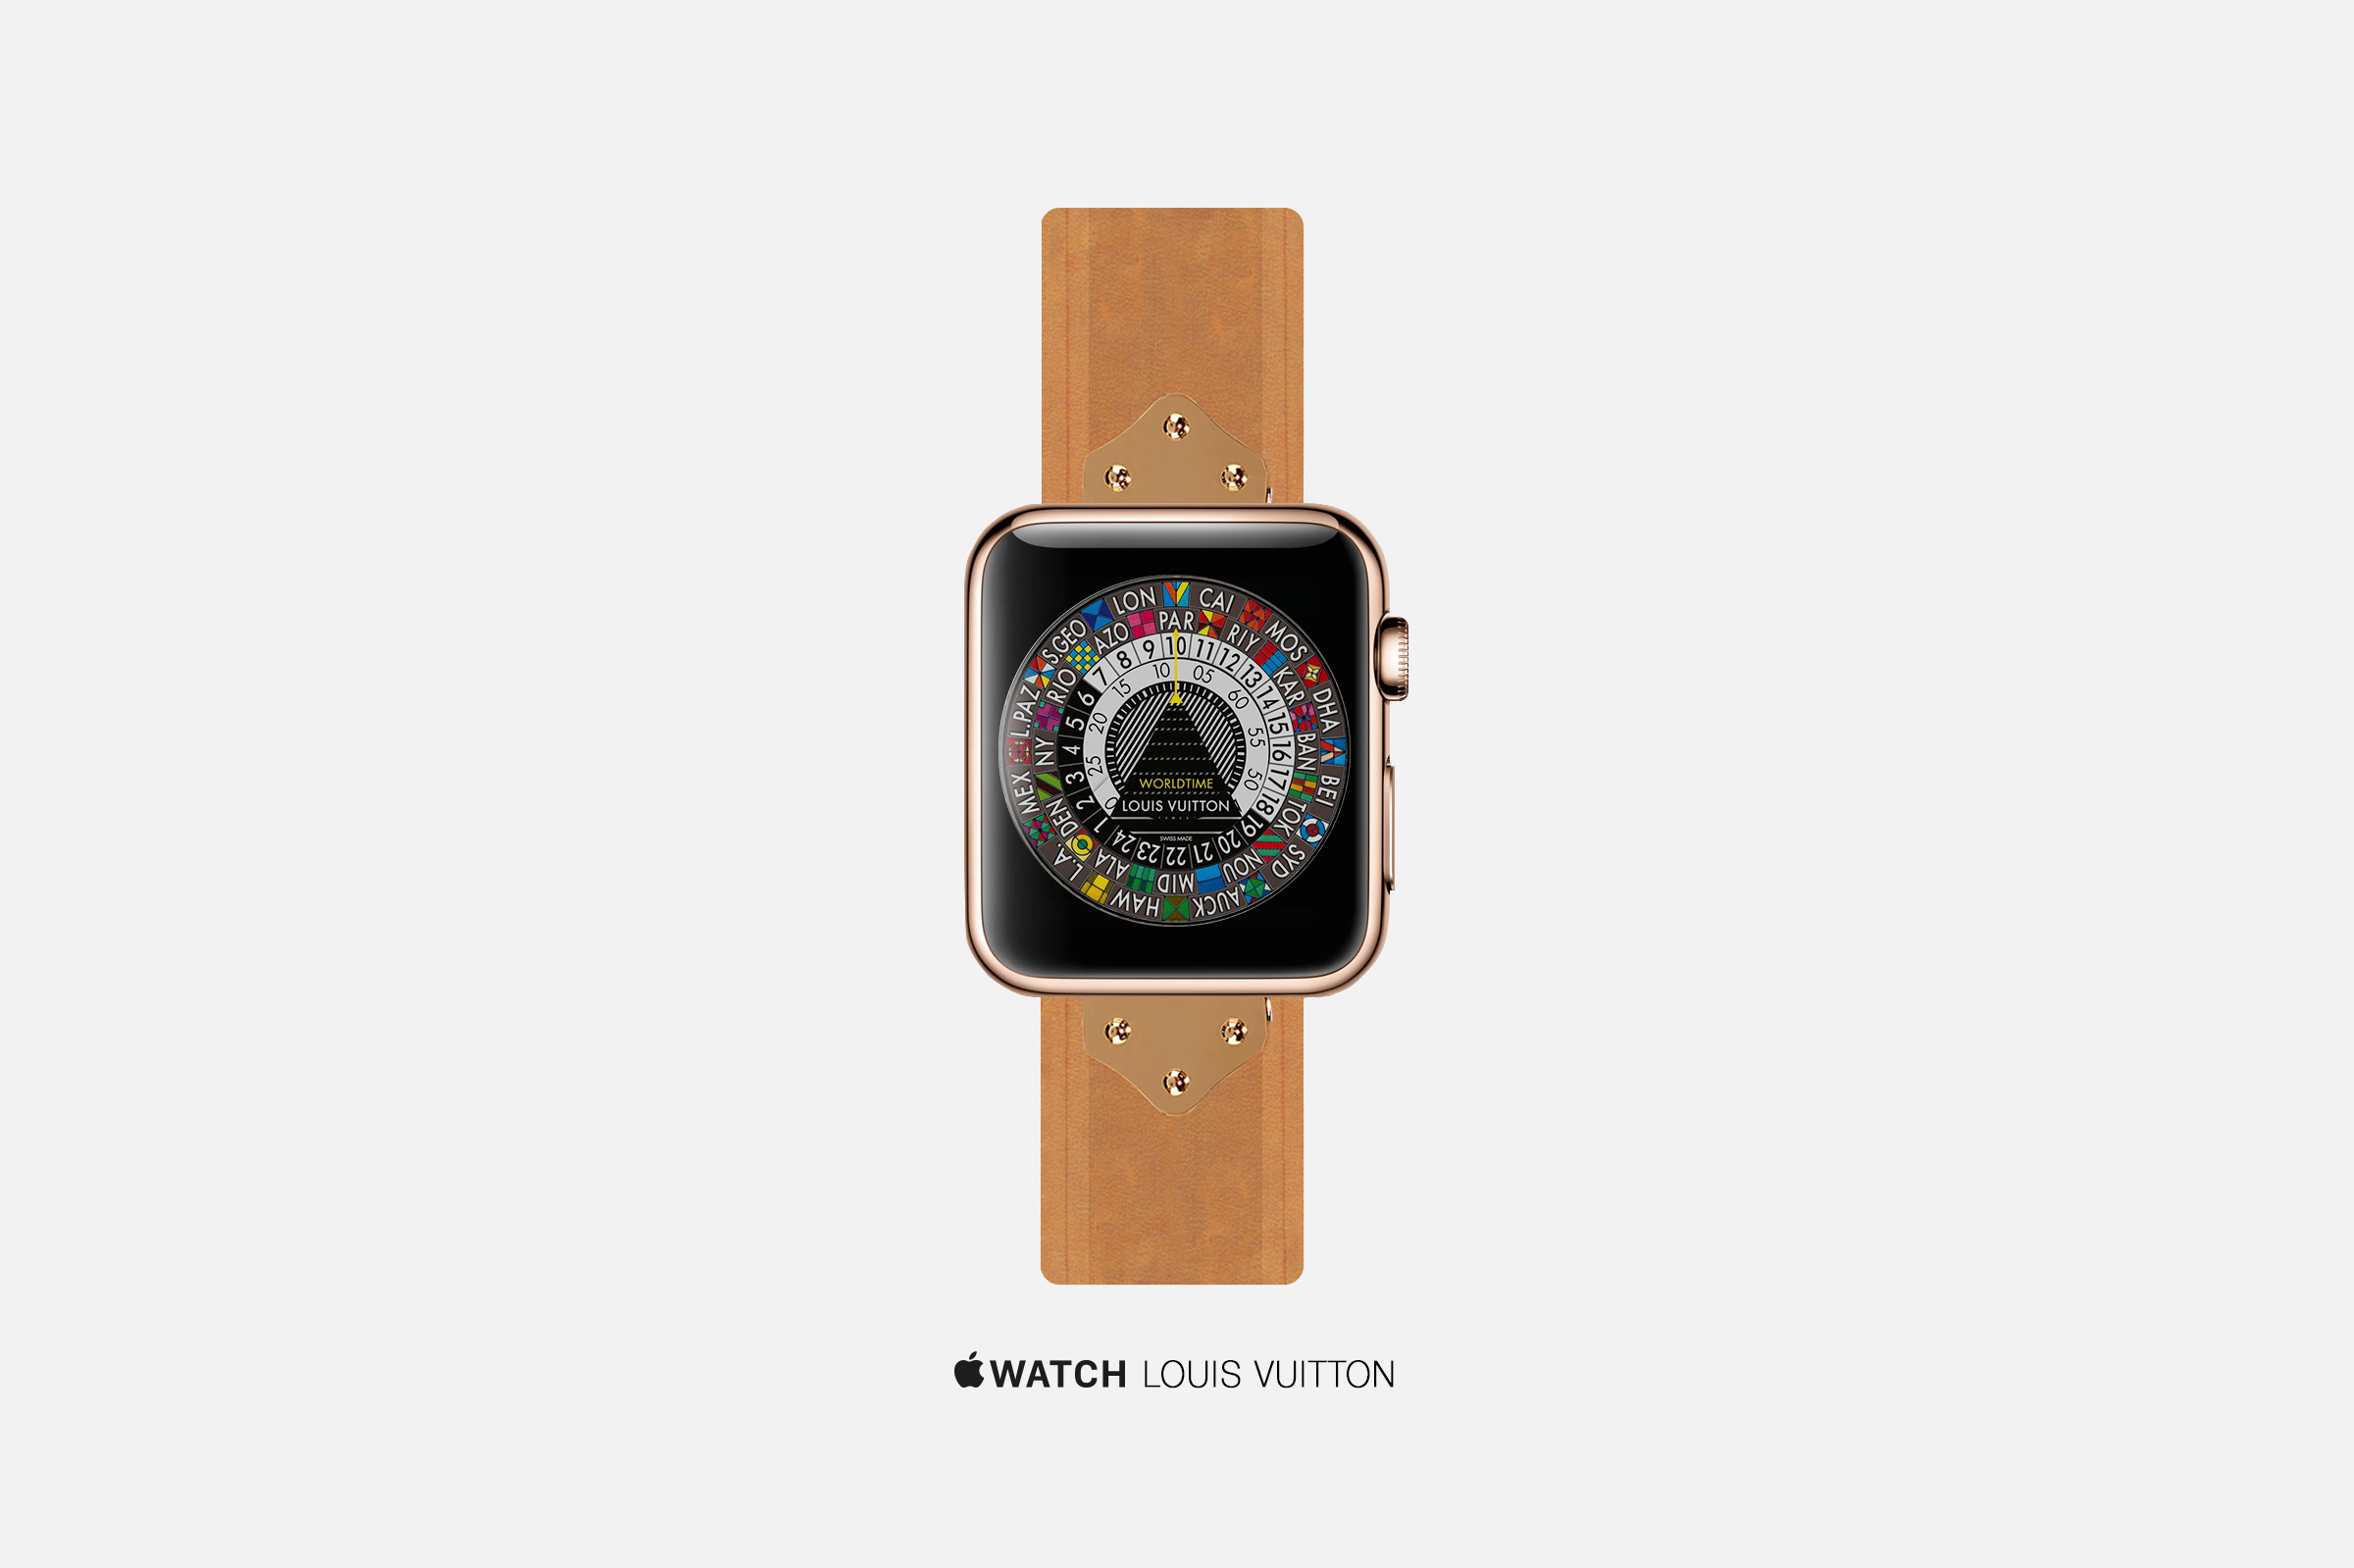 An artist's concept of an Apple Watch by Louis Vuitton.